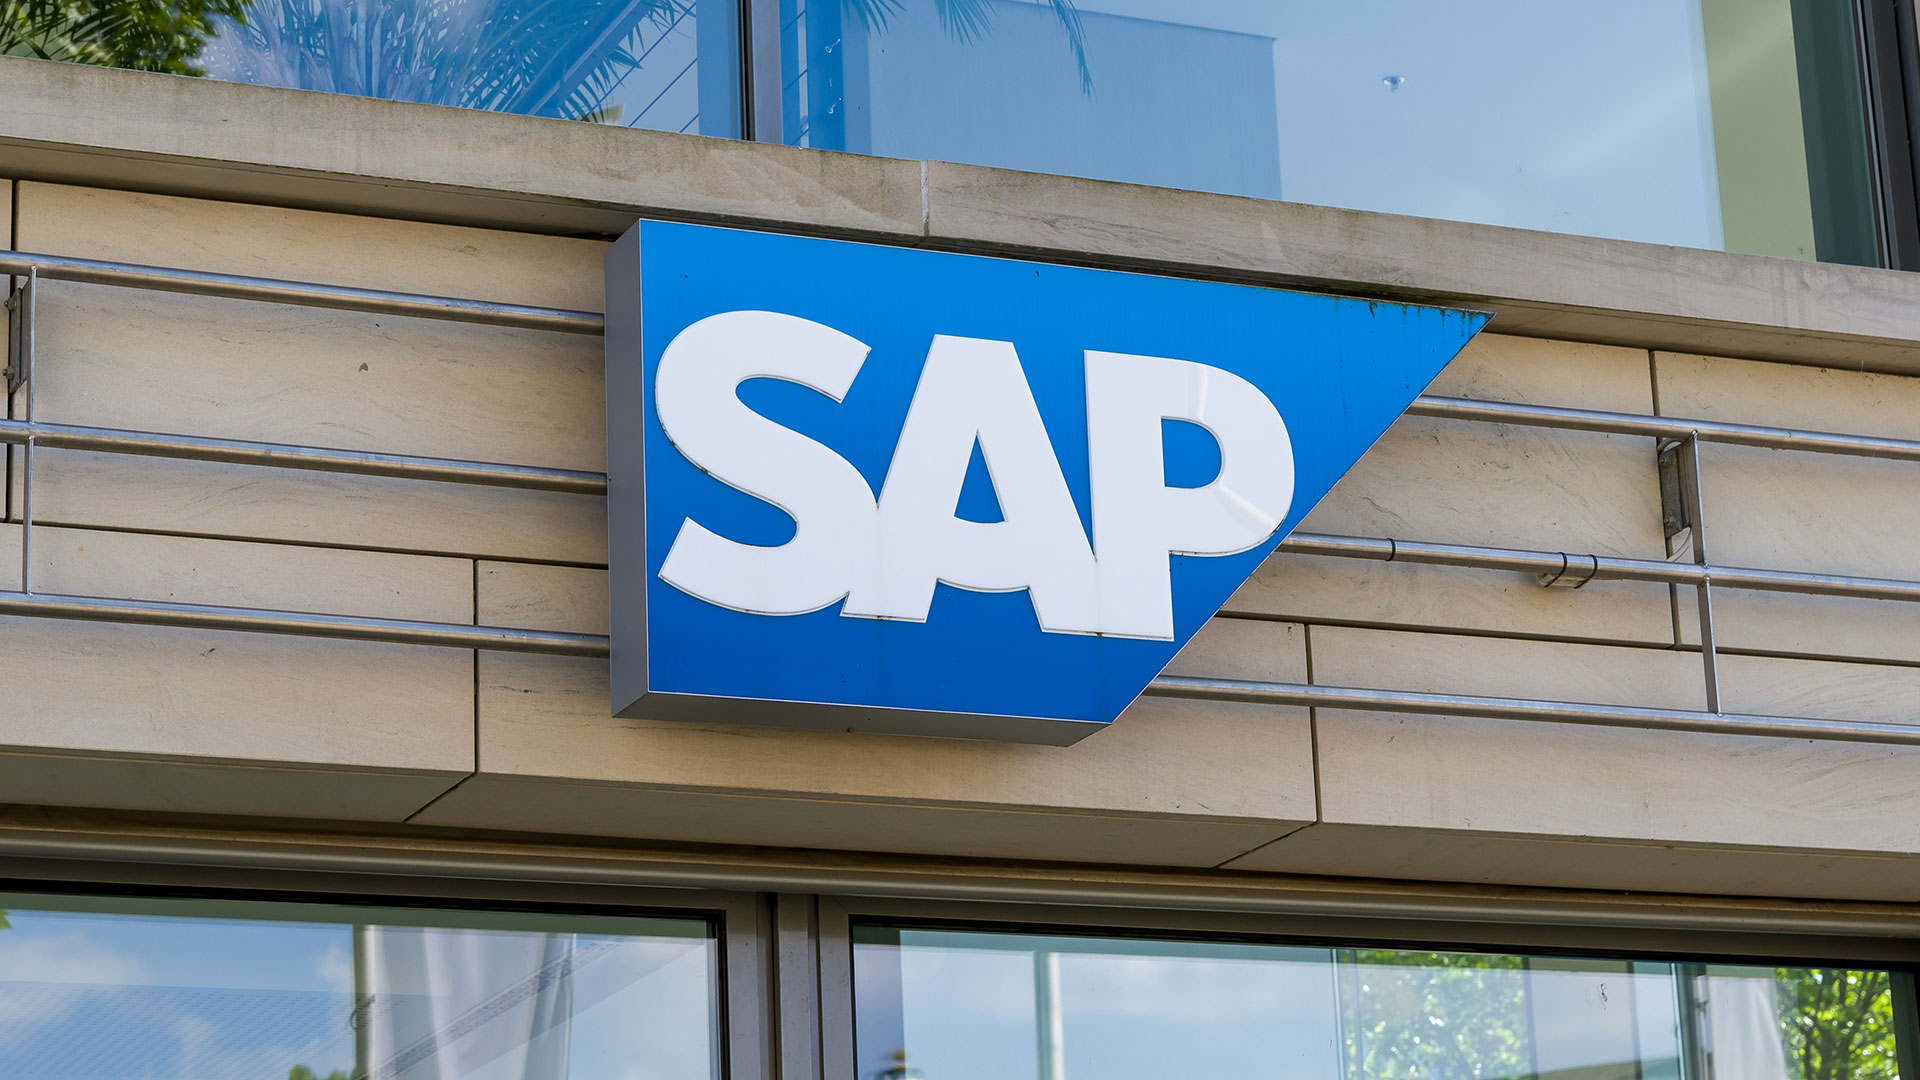 SAP: Wie geht es denn jetzt für die Aktie weiter? (Foto: 1take1shot/Shutterstock)